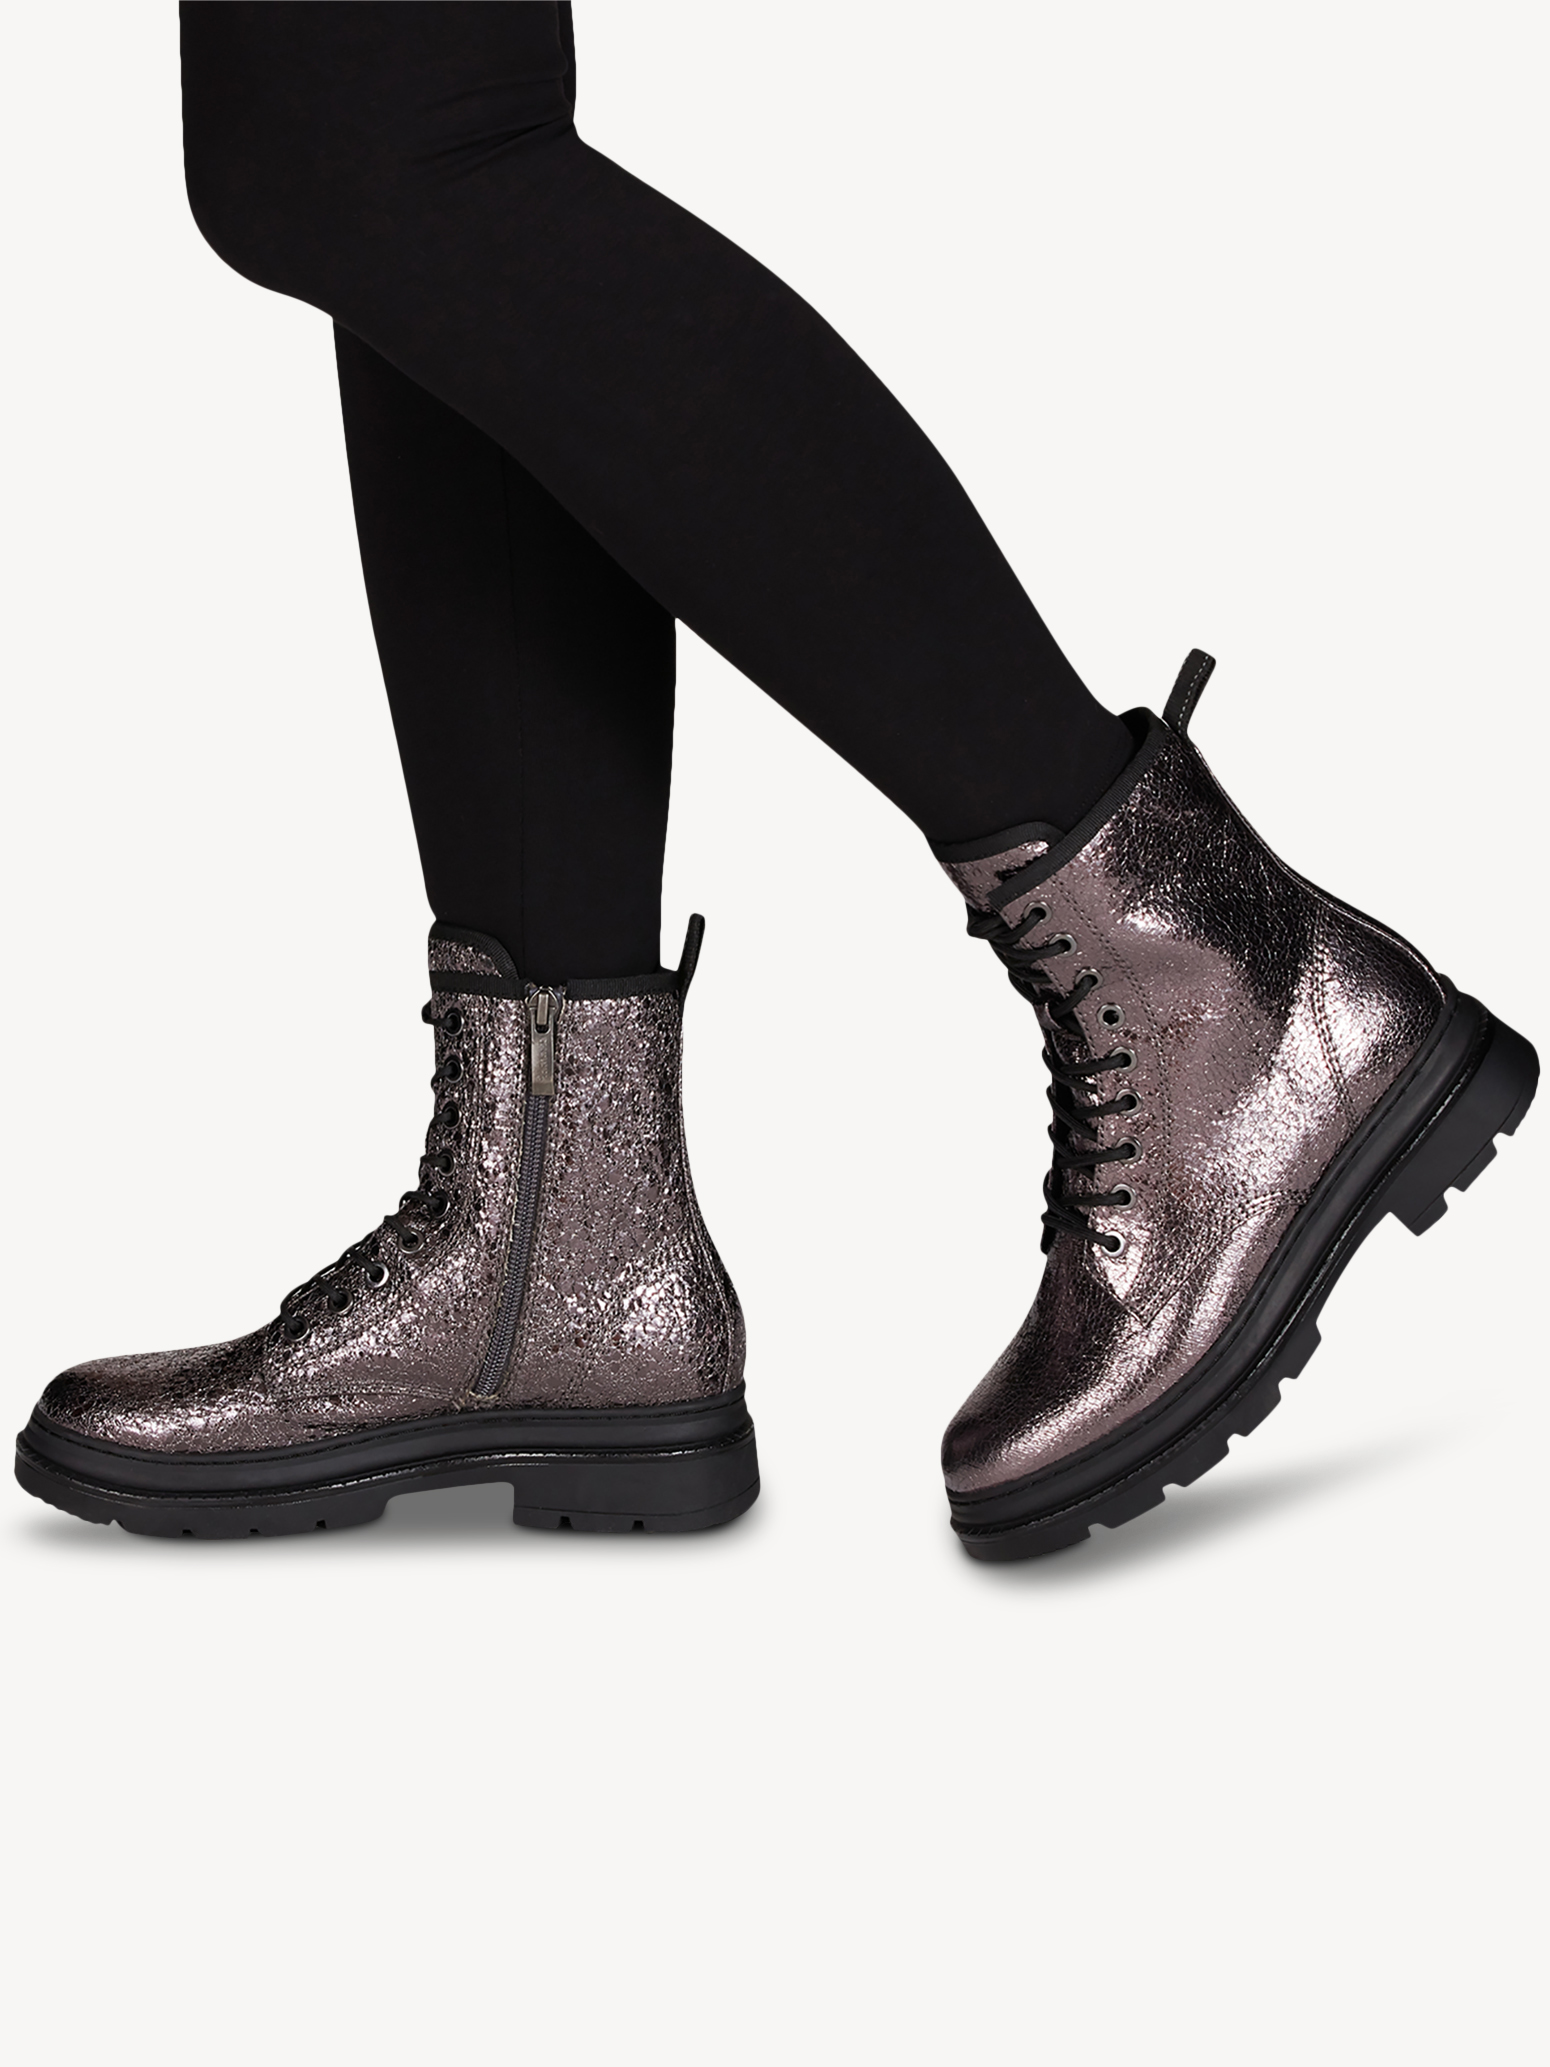 Ботинки женские 5 AW20 (серый металлик) - изображение №1